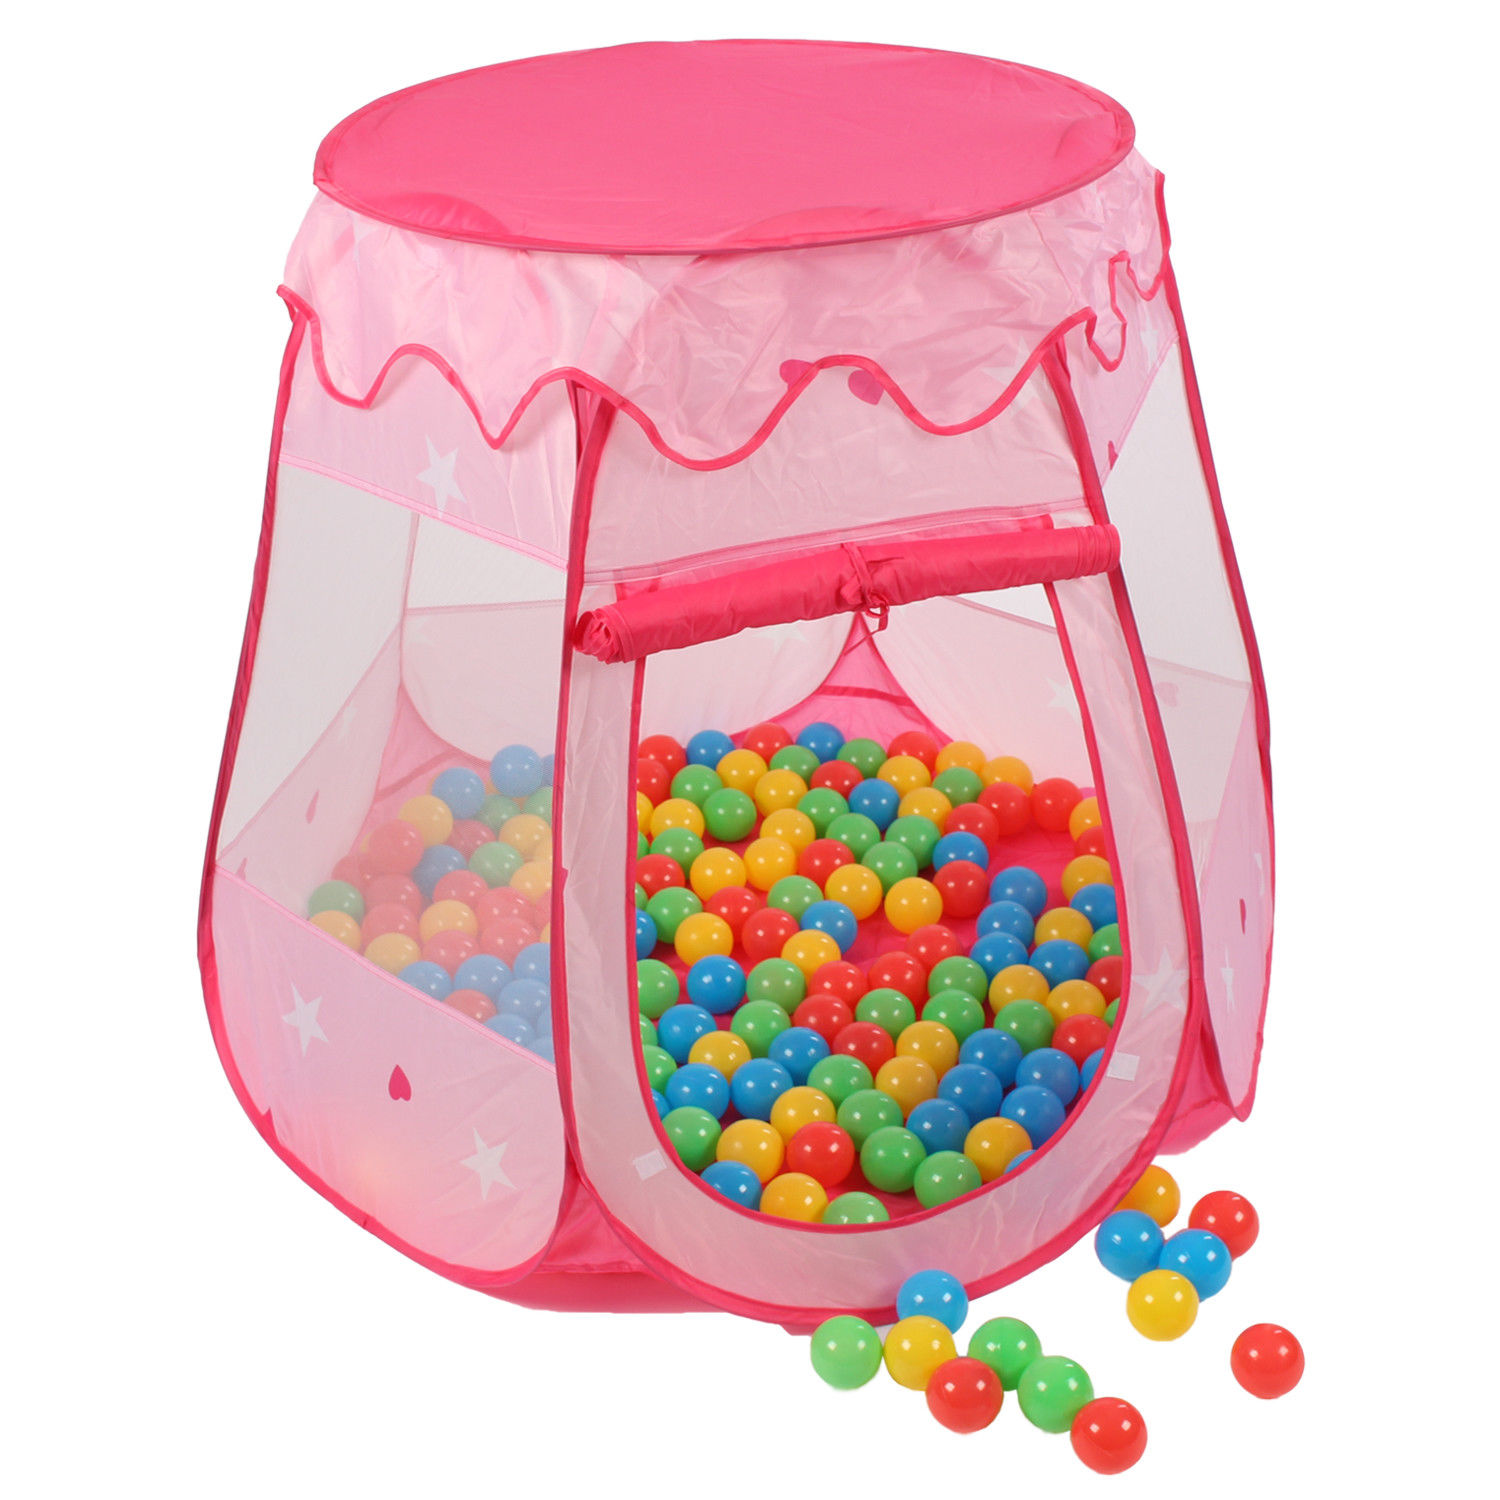 Játszósátor rózsaszín színben, ajándék 100 db labdával és hordtásákával